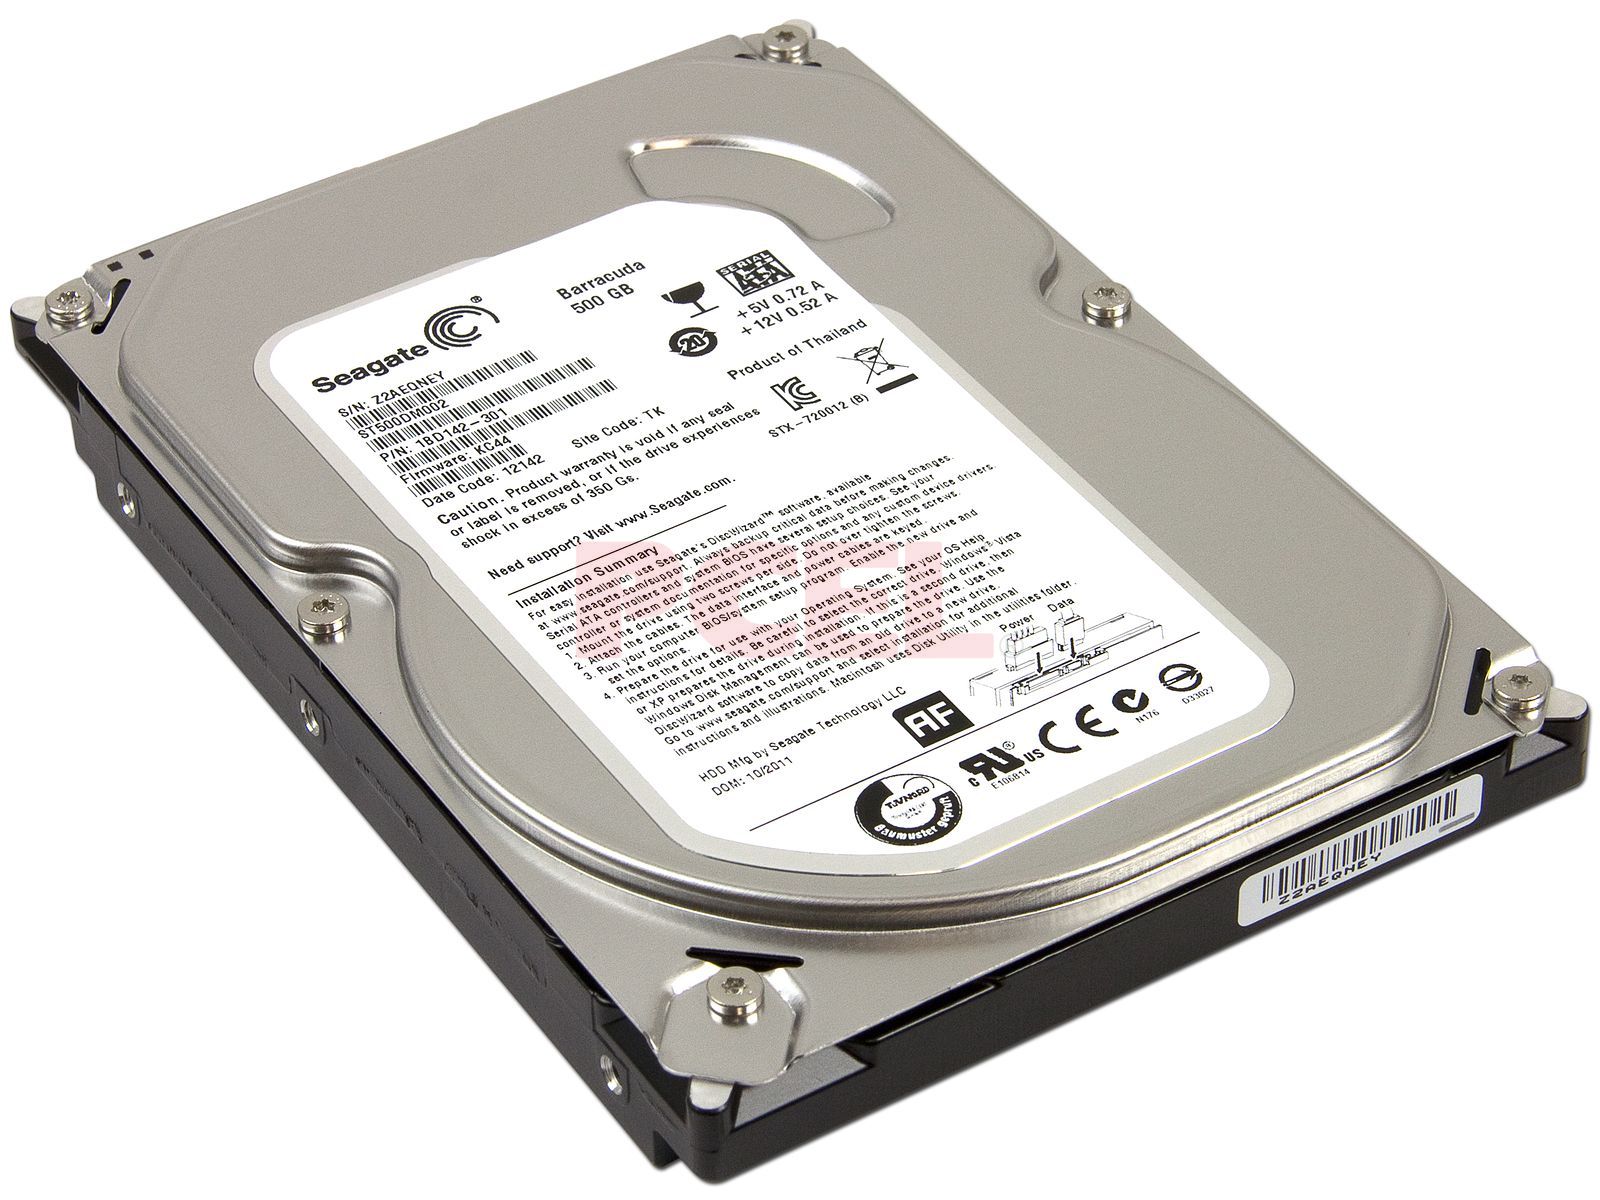 Basura Modernizar Norma Disco Duro Seagate de 500 GB, Caché 16Mb, 7200 RPM, SATA III (6.0 Gb/s)